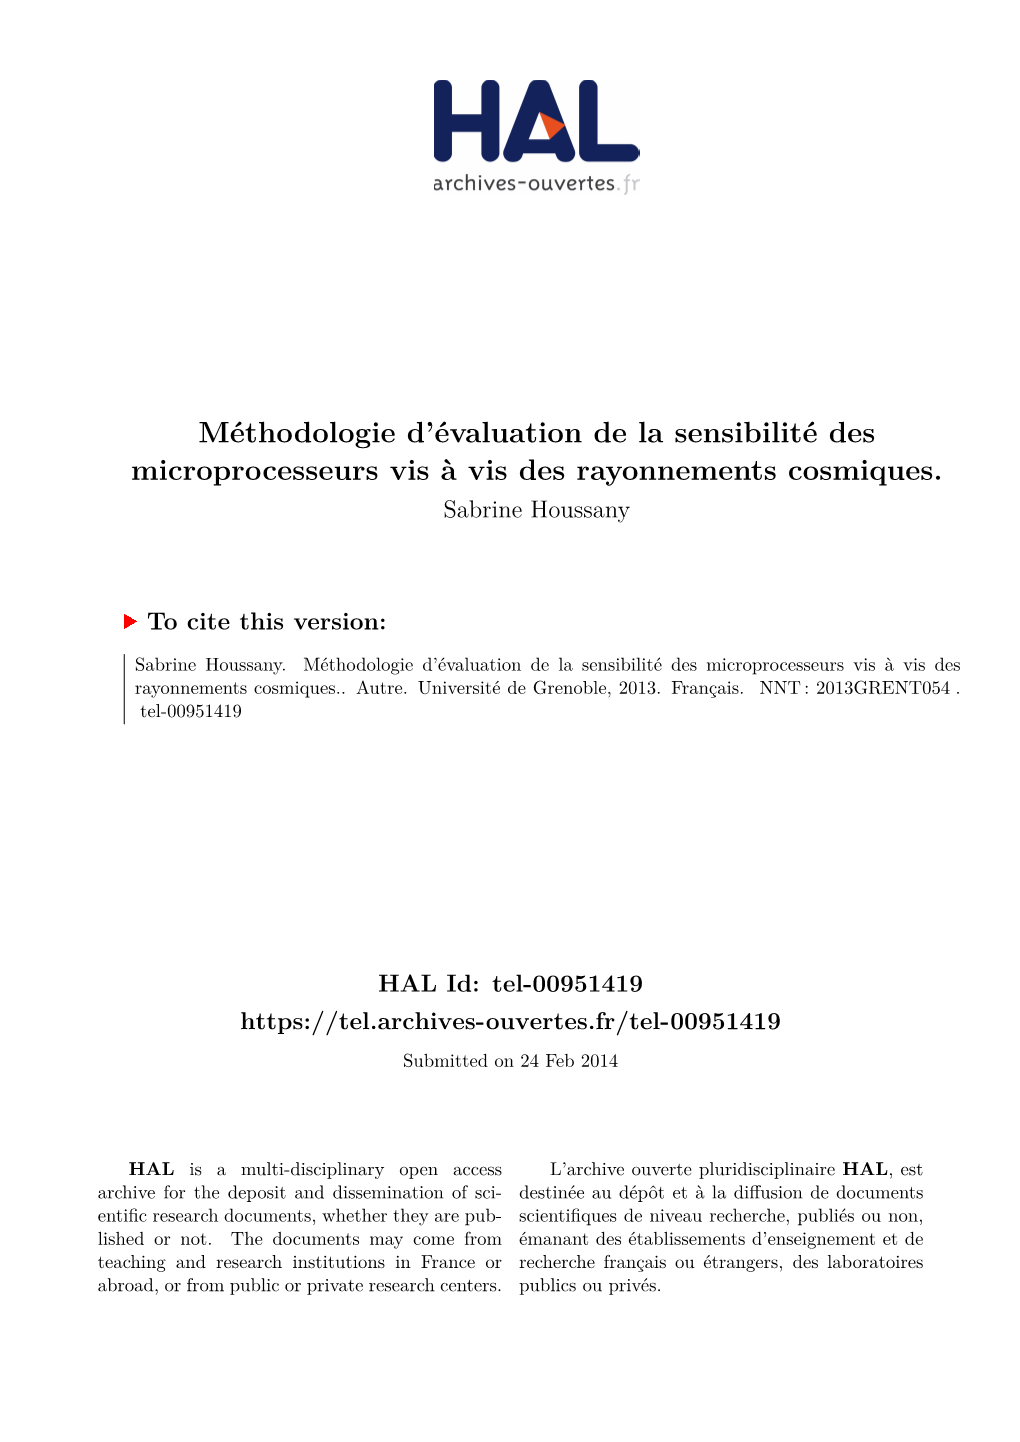 Méthodologie D'évaluation De La Sensibilité Des Microprocesseurs Vis-À-Vis Des Rayonnements Cosmiques